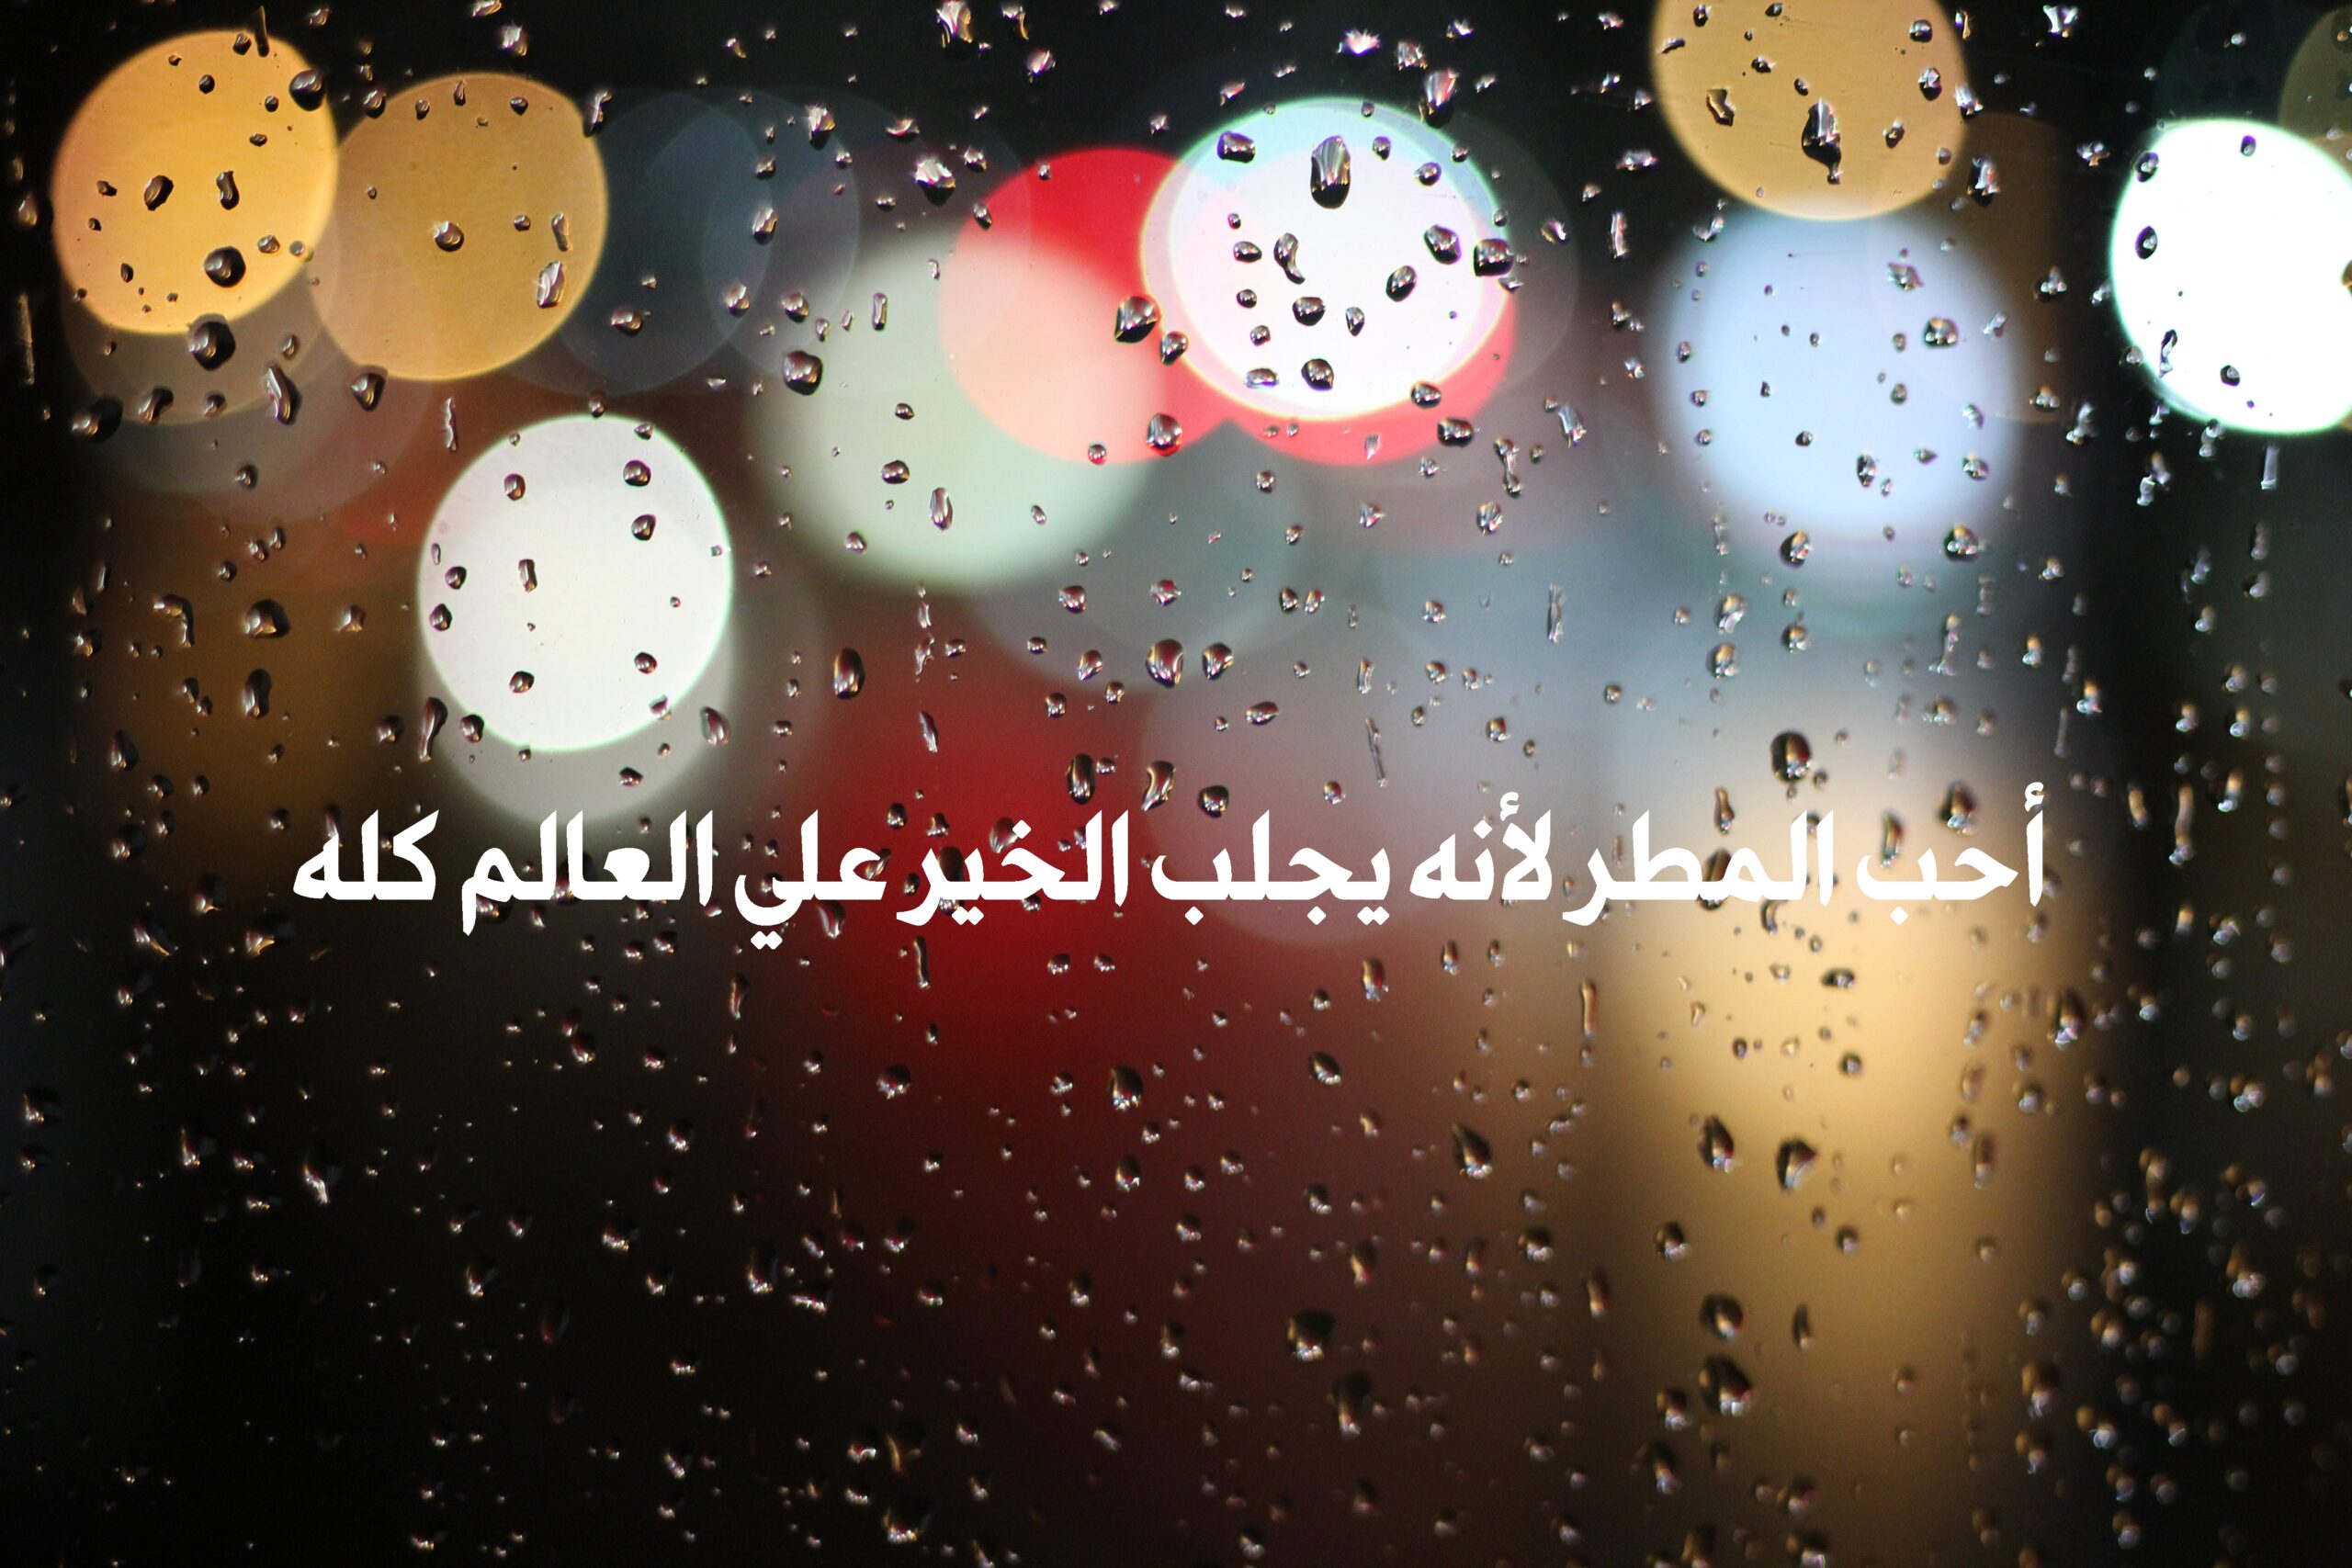 صورة مطر جميلة مكتوب عليها أحب المطر لأنه يجلب الخير علي العالم كله